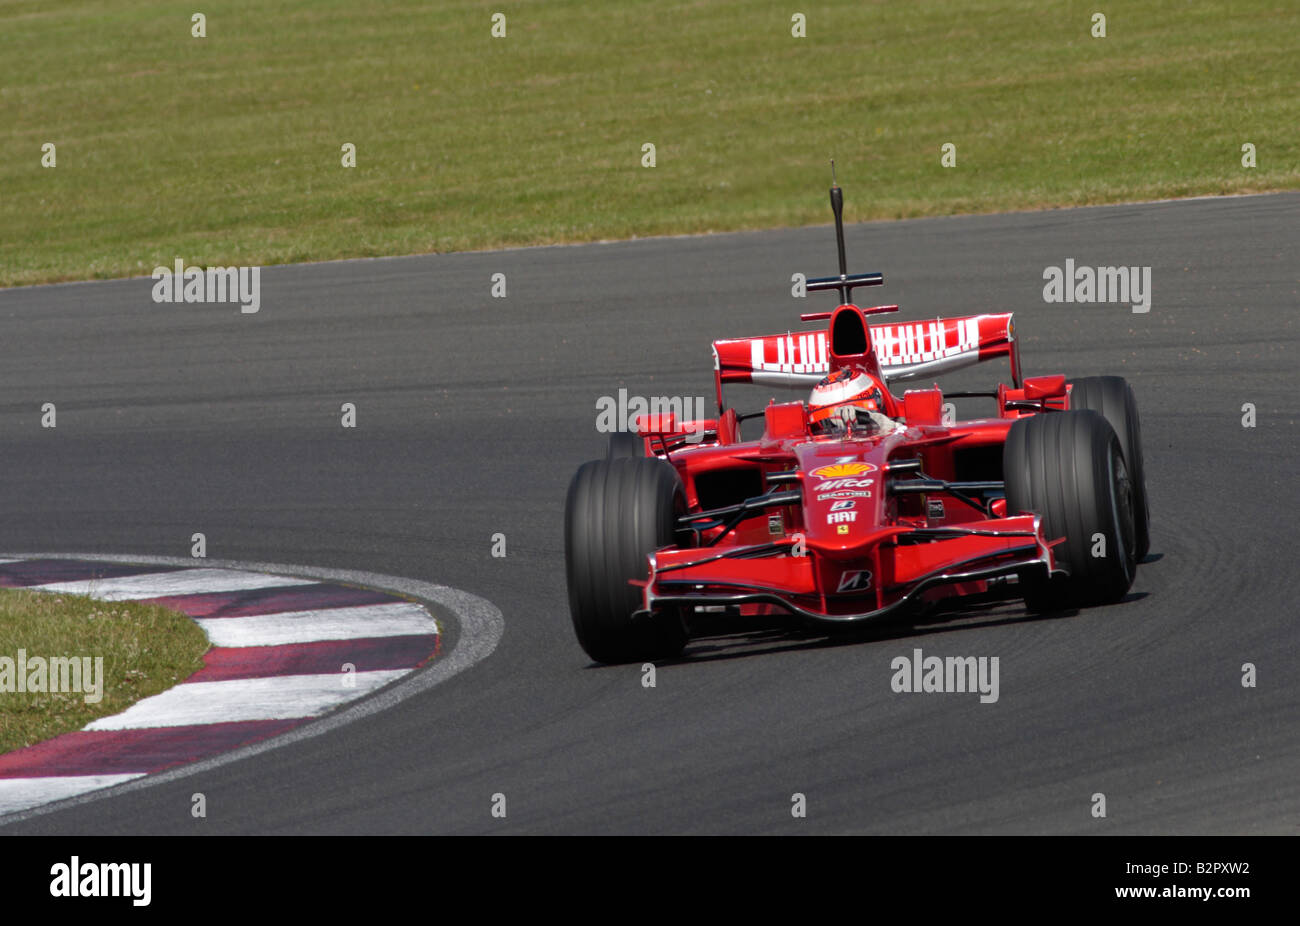 Kimi Räikkönen in der Scuderia Ferrari F2008 Formel 1 Rennwagen um Loughfield, Silverstone UK Stockfoto